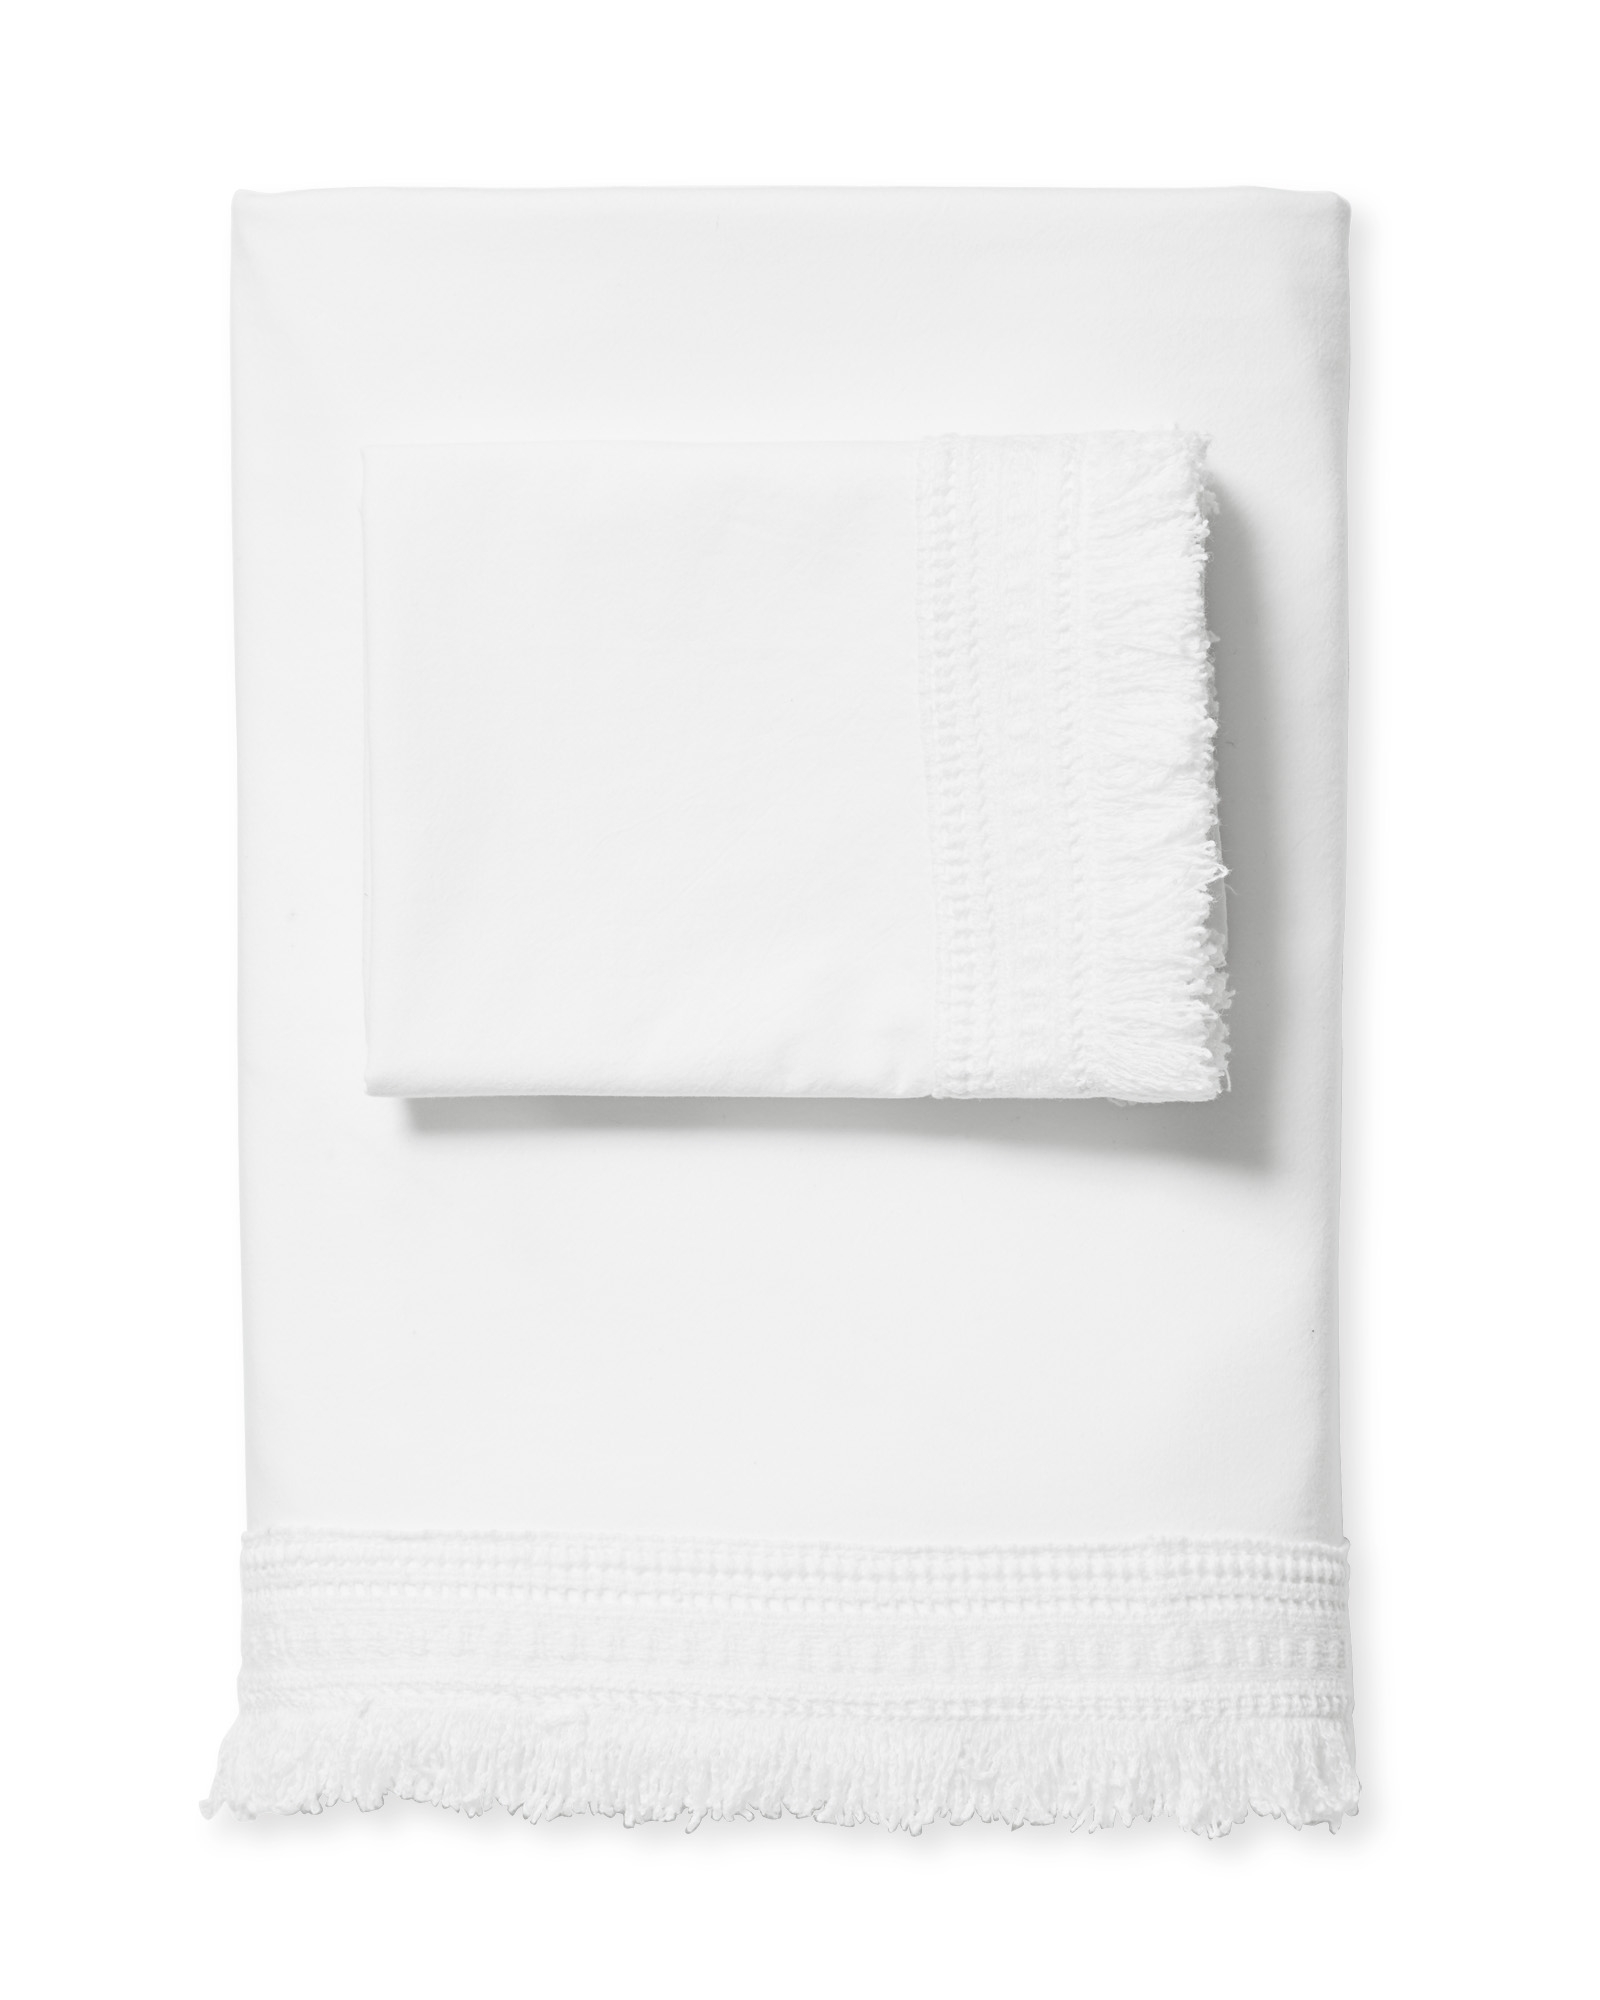 Solana King Sheet Set - White - Image 2